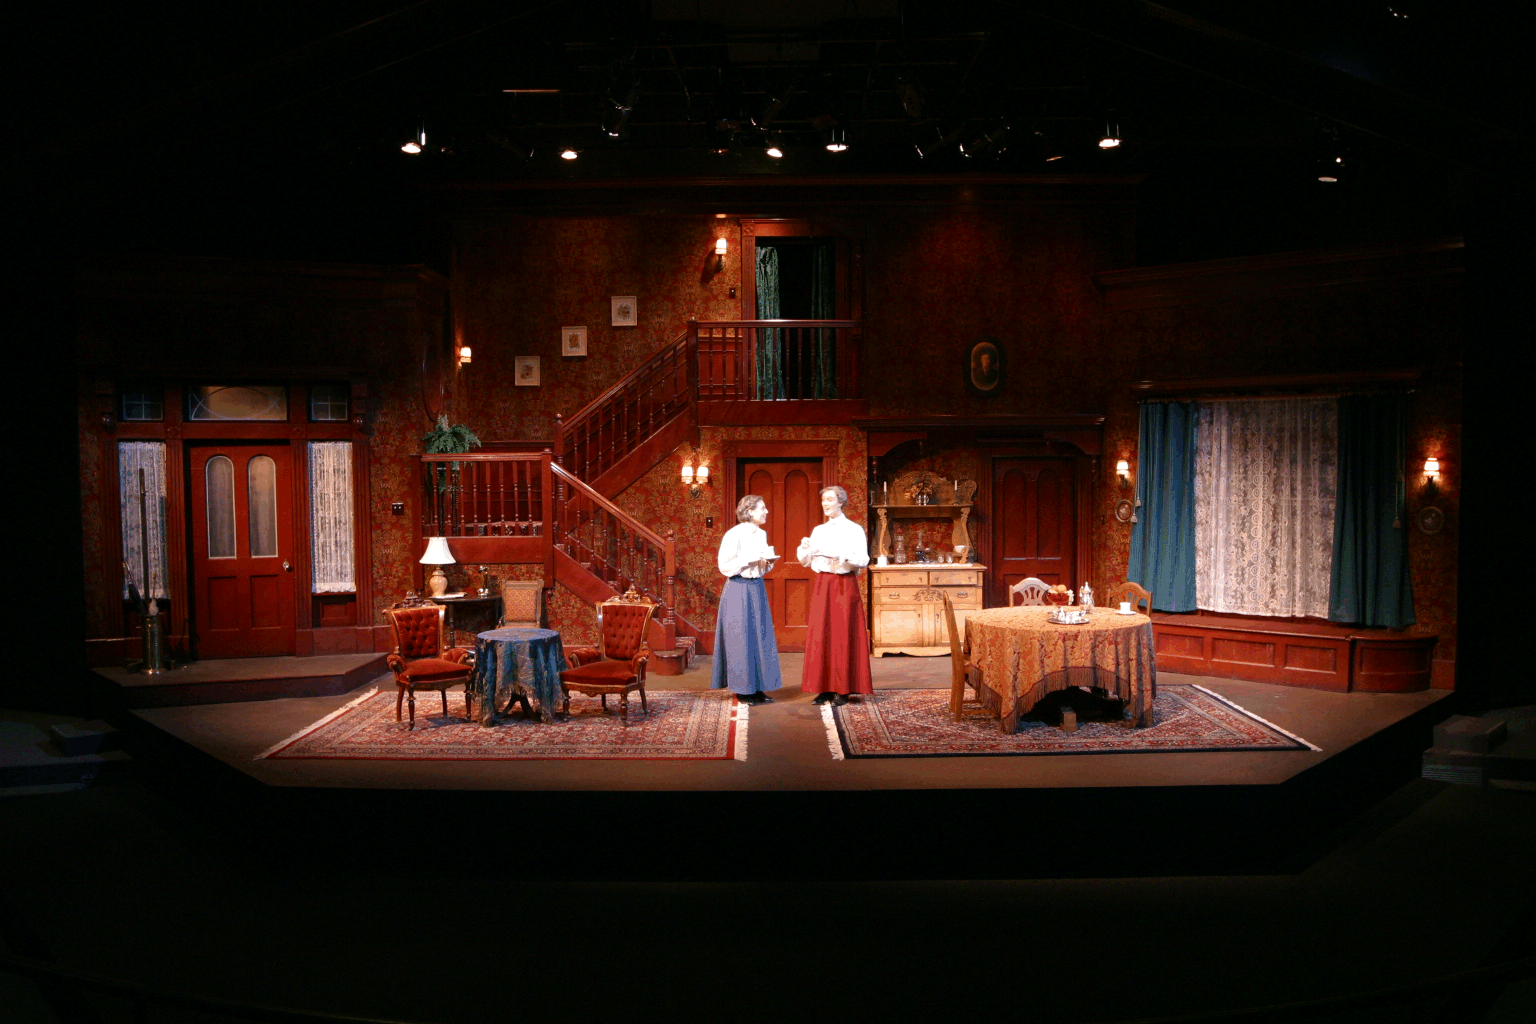 Setting theatre